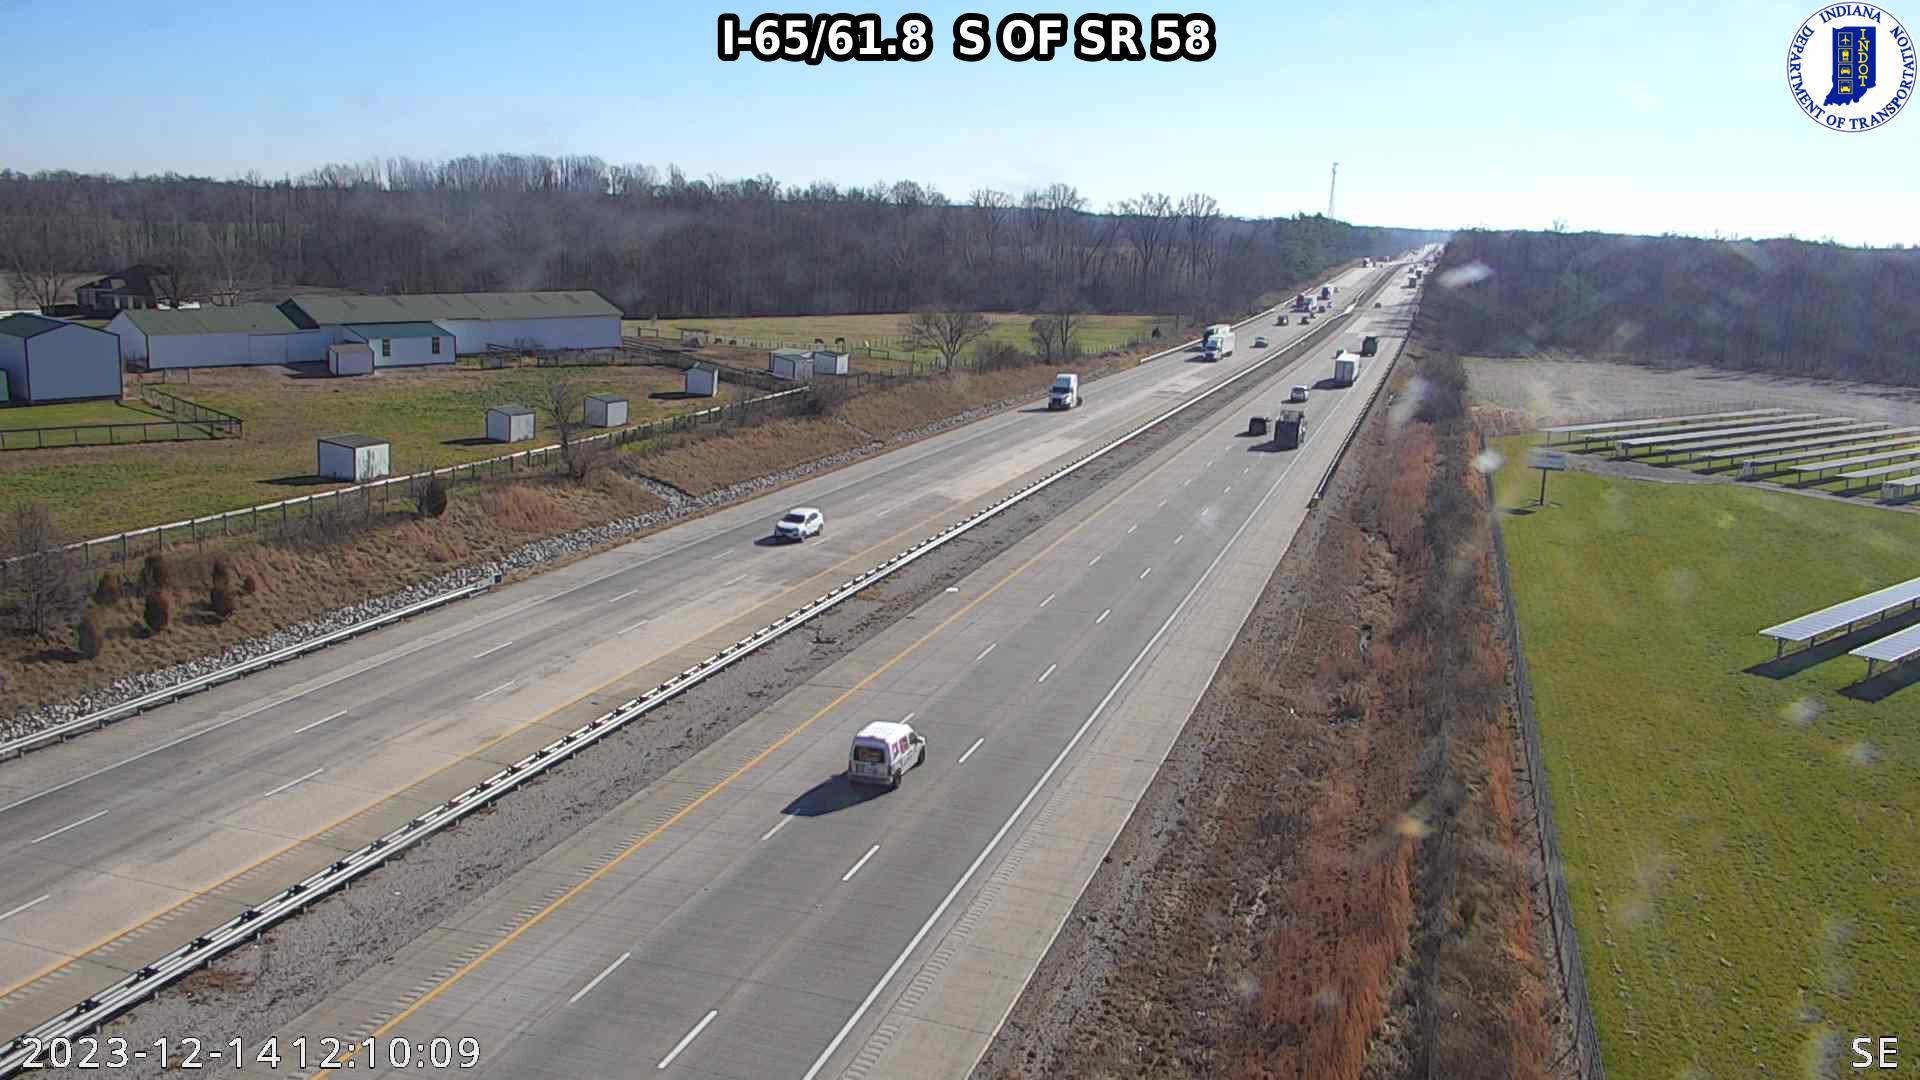 Rosstown: I-65: I-65/61.8 S OF SR 58: I-65/61.8 S OF SR 58 Traffic Camera